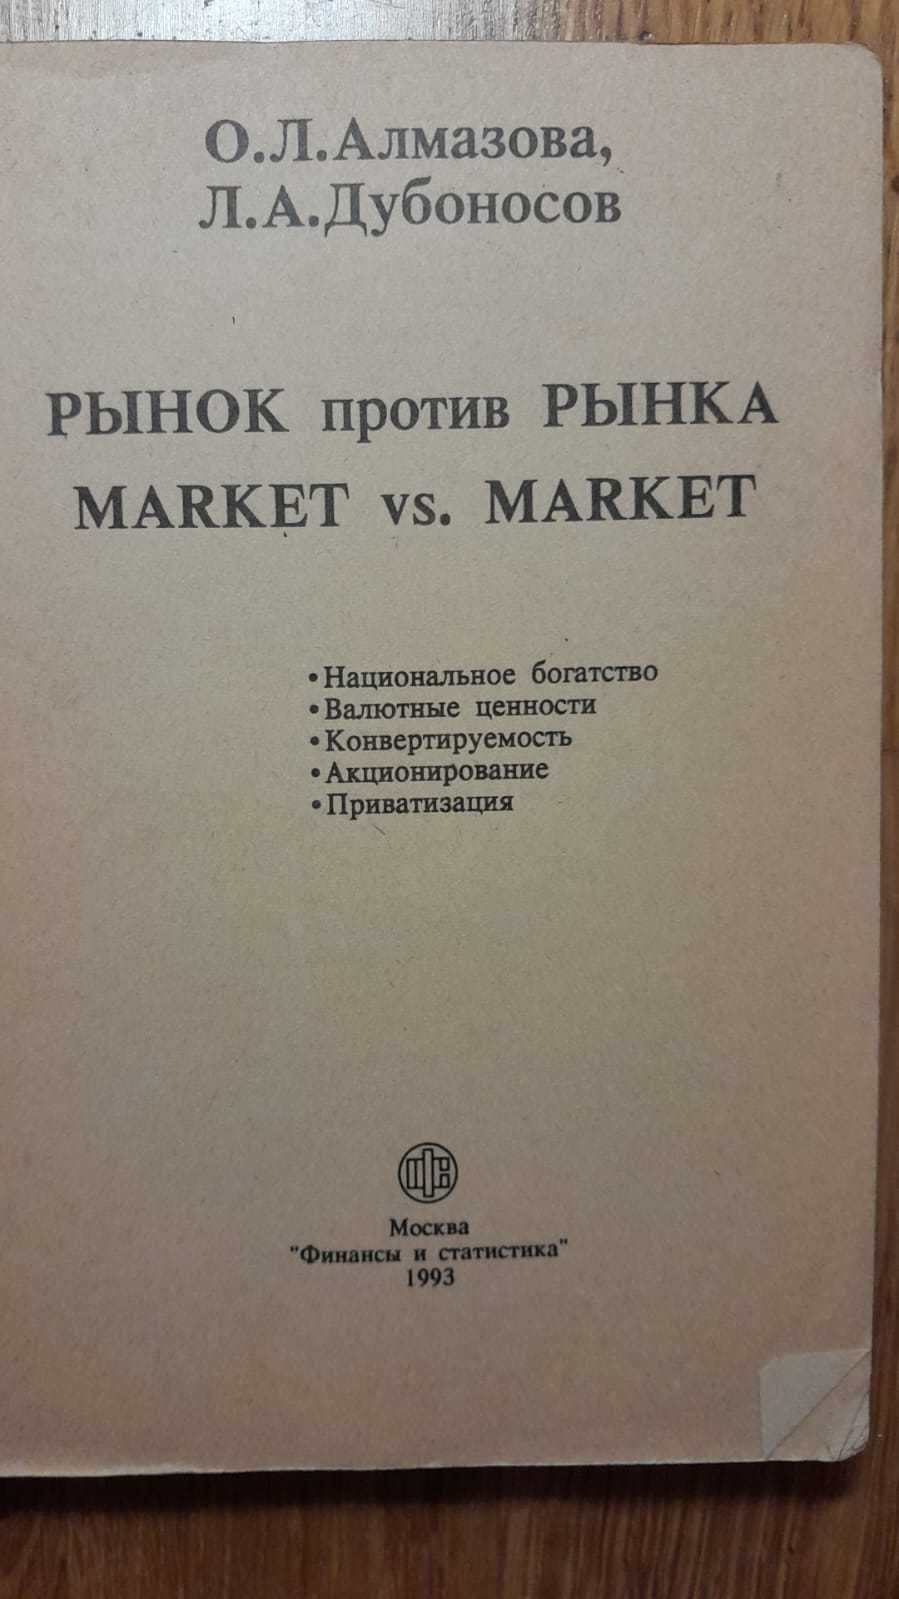 Алмазова, Дубоносов. Рынок Против Рынка. Для Экономистов и Финансистов